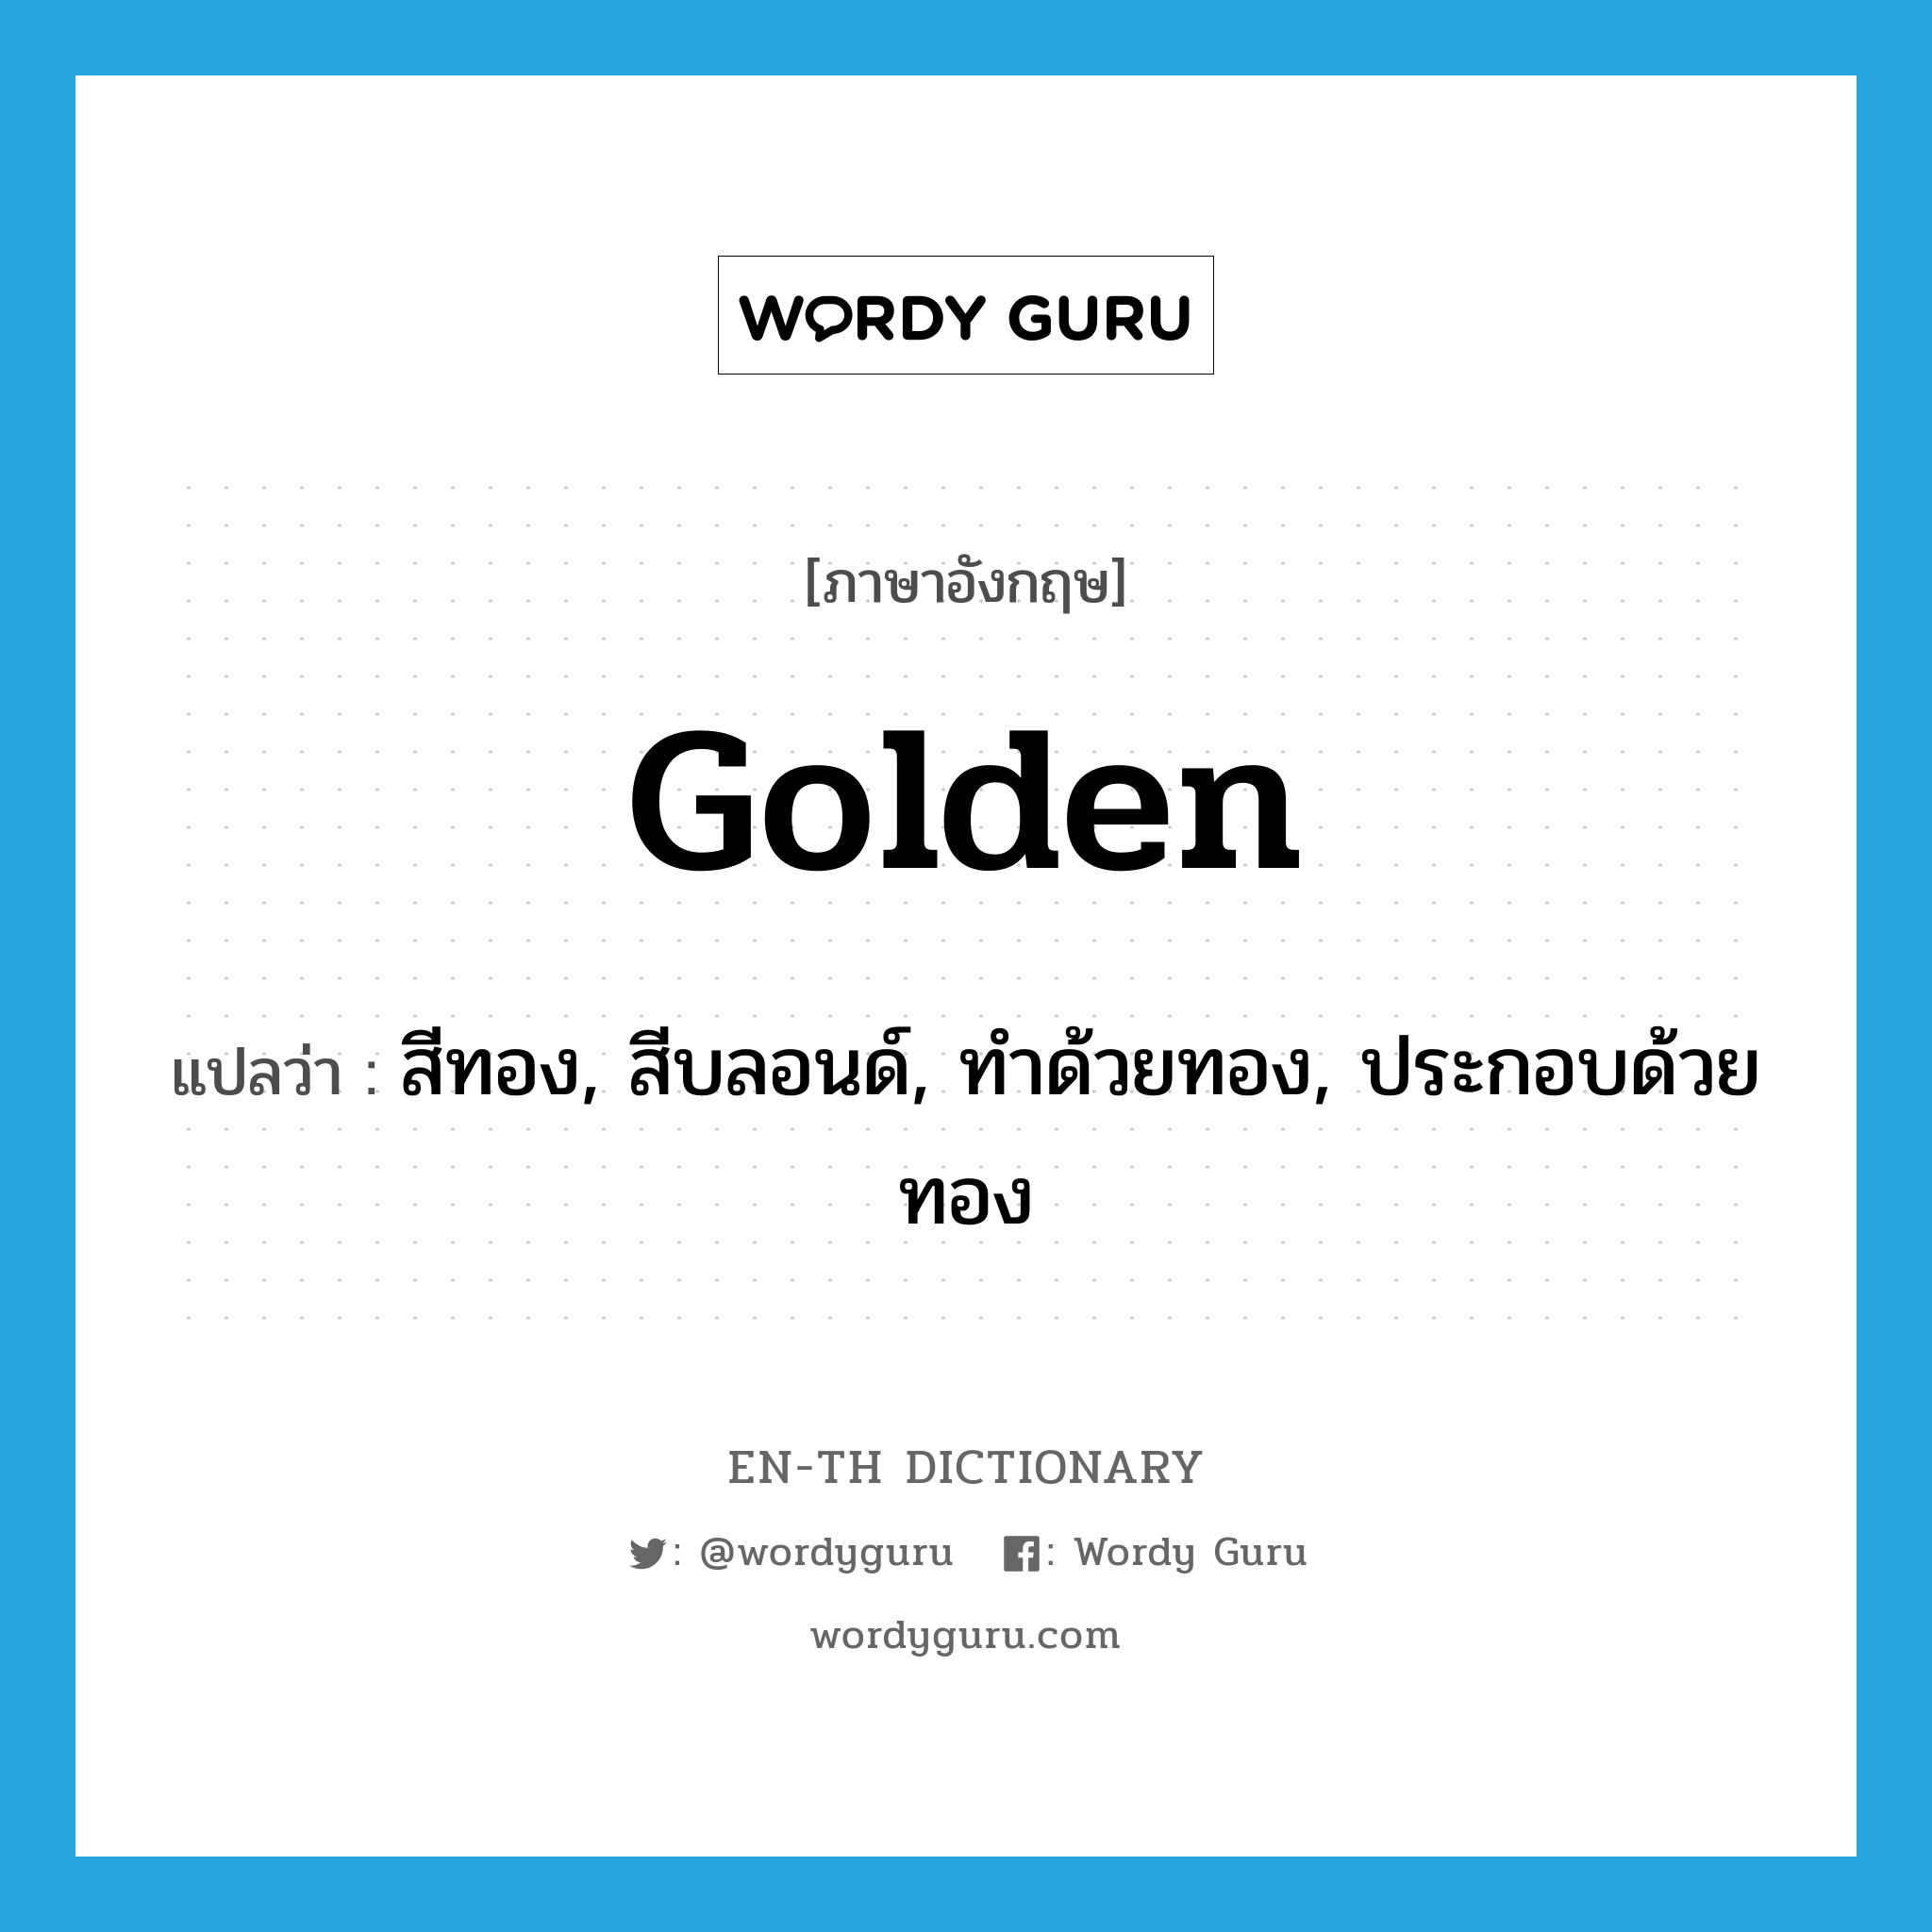 สีทอง, สีบลอนด์, ทำด้วยทอง, ประกอบด้วยทอง ภาษาอังกฤษ? | Wordy Guru